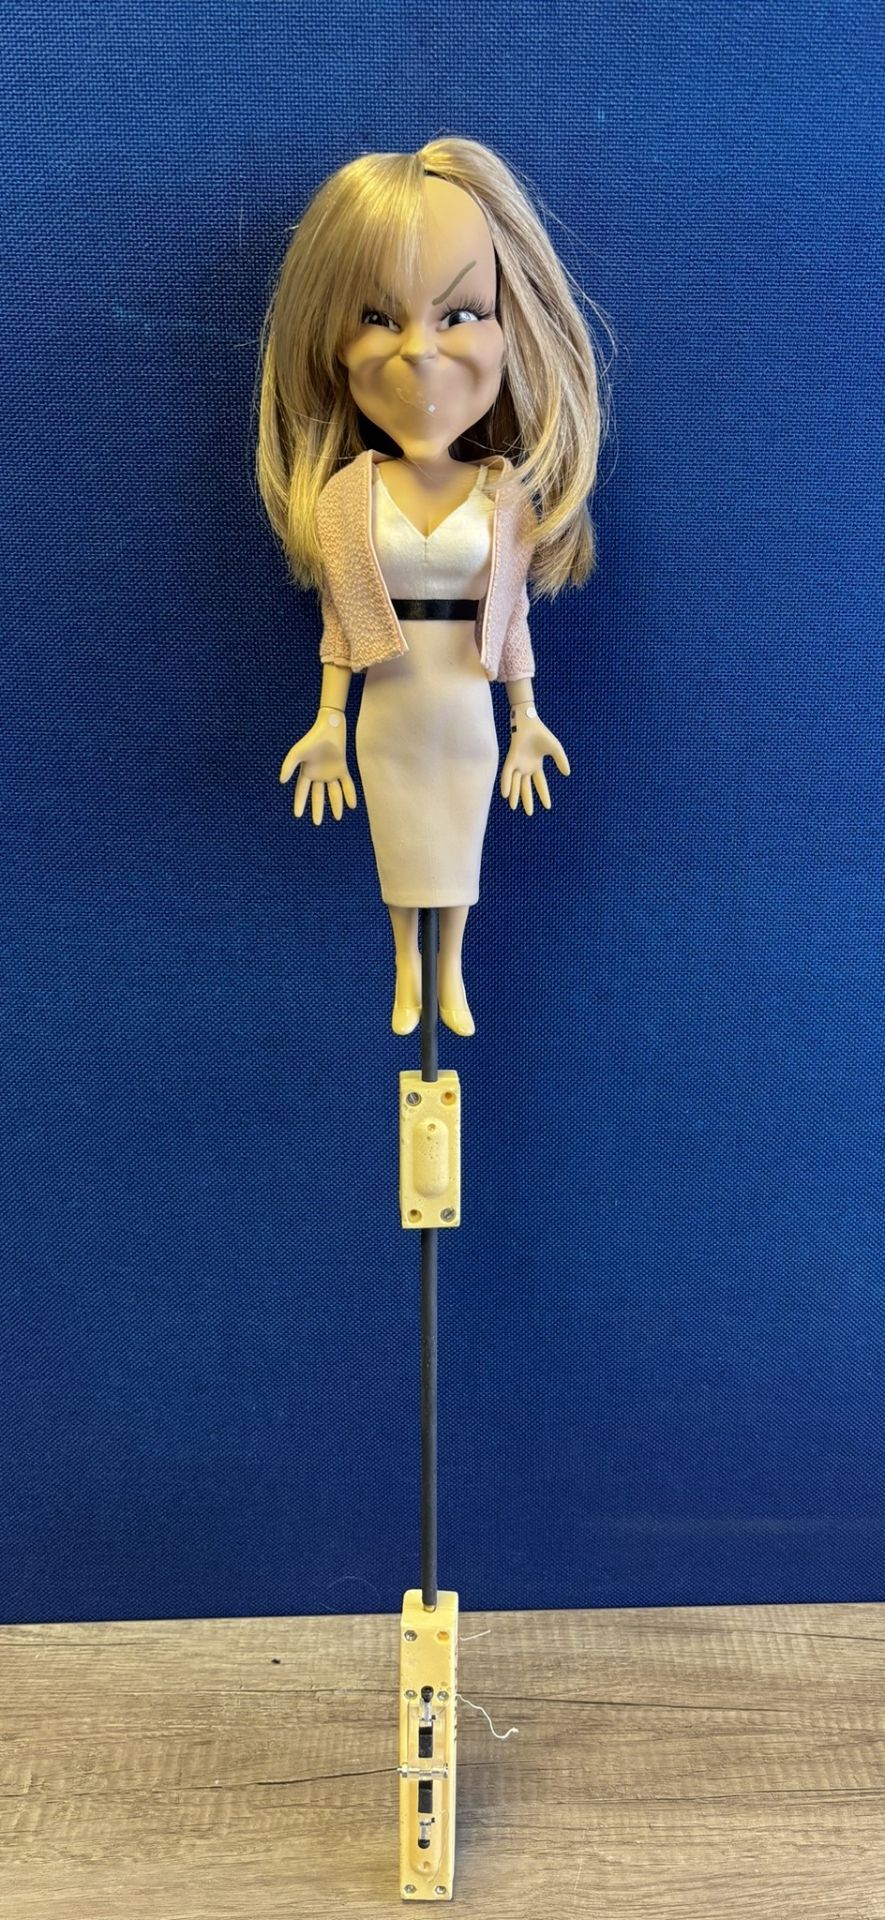 Newzoid puppet - Amanda Holden - Image 3 of 3